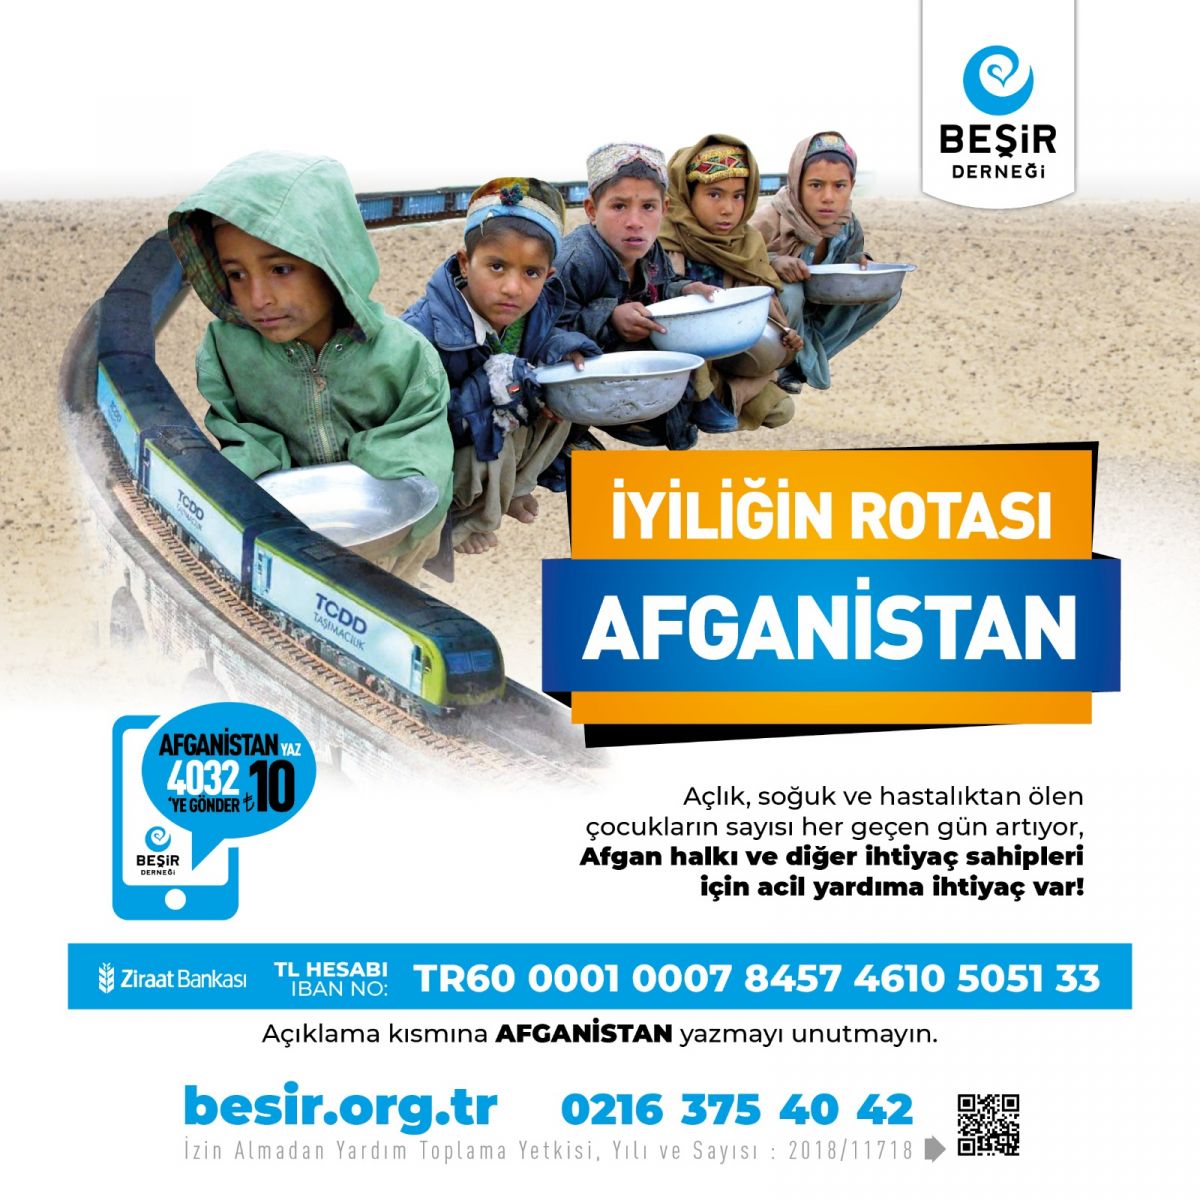 Türkiye'nin İyilik Trenleri Afganistan'daki Mazlumlara Ulaşıyor!